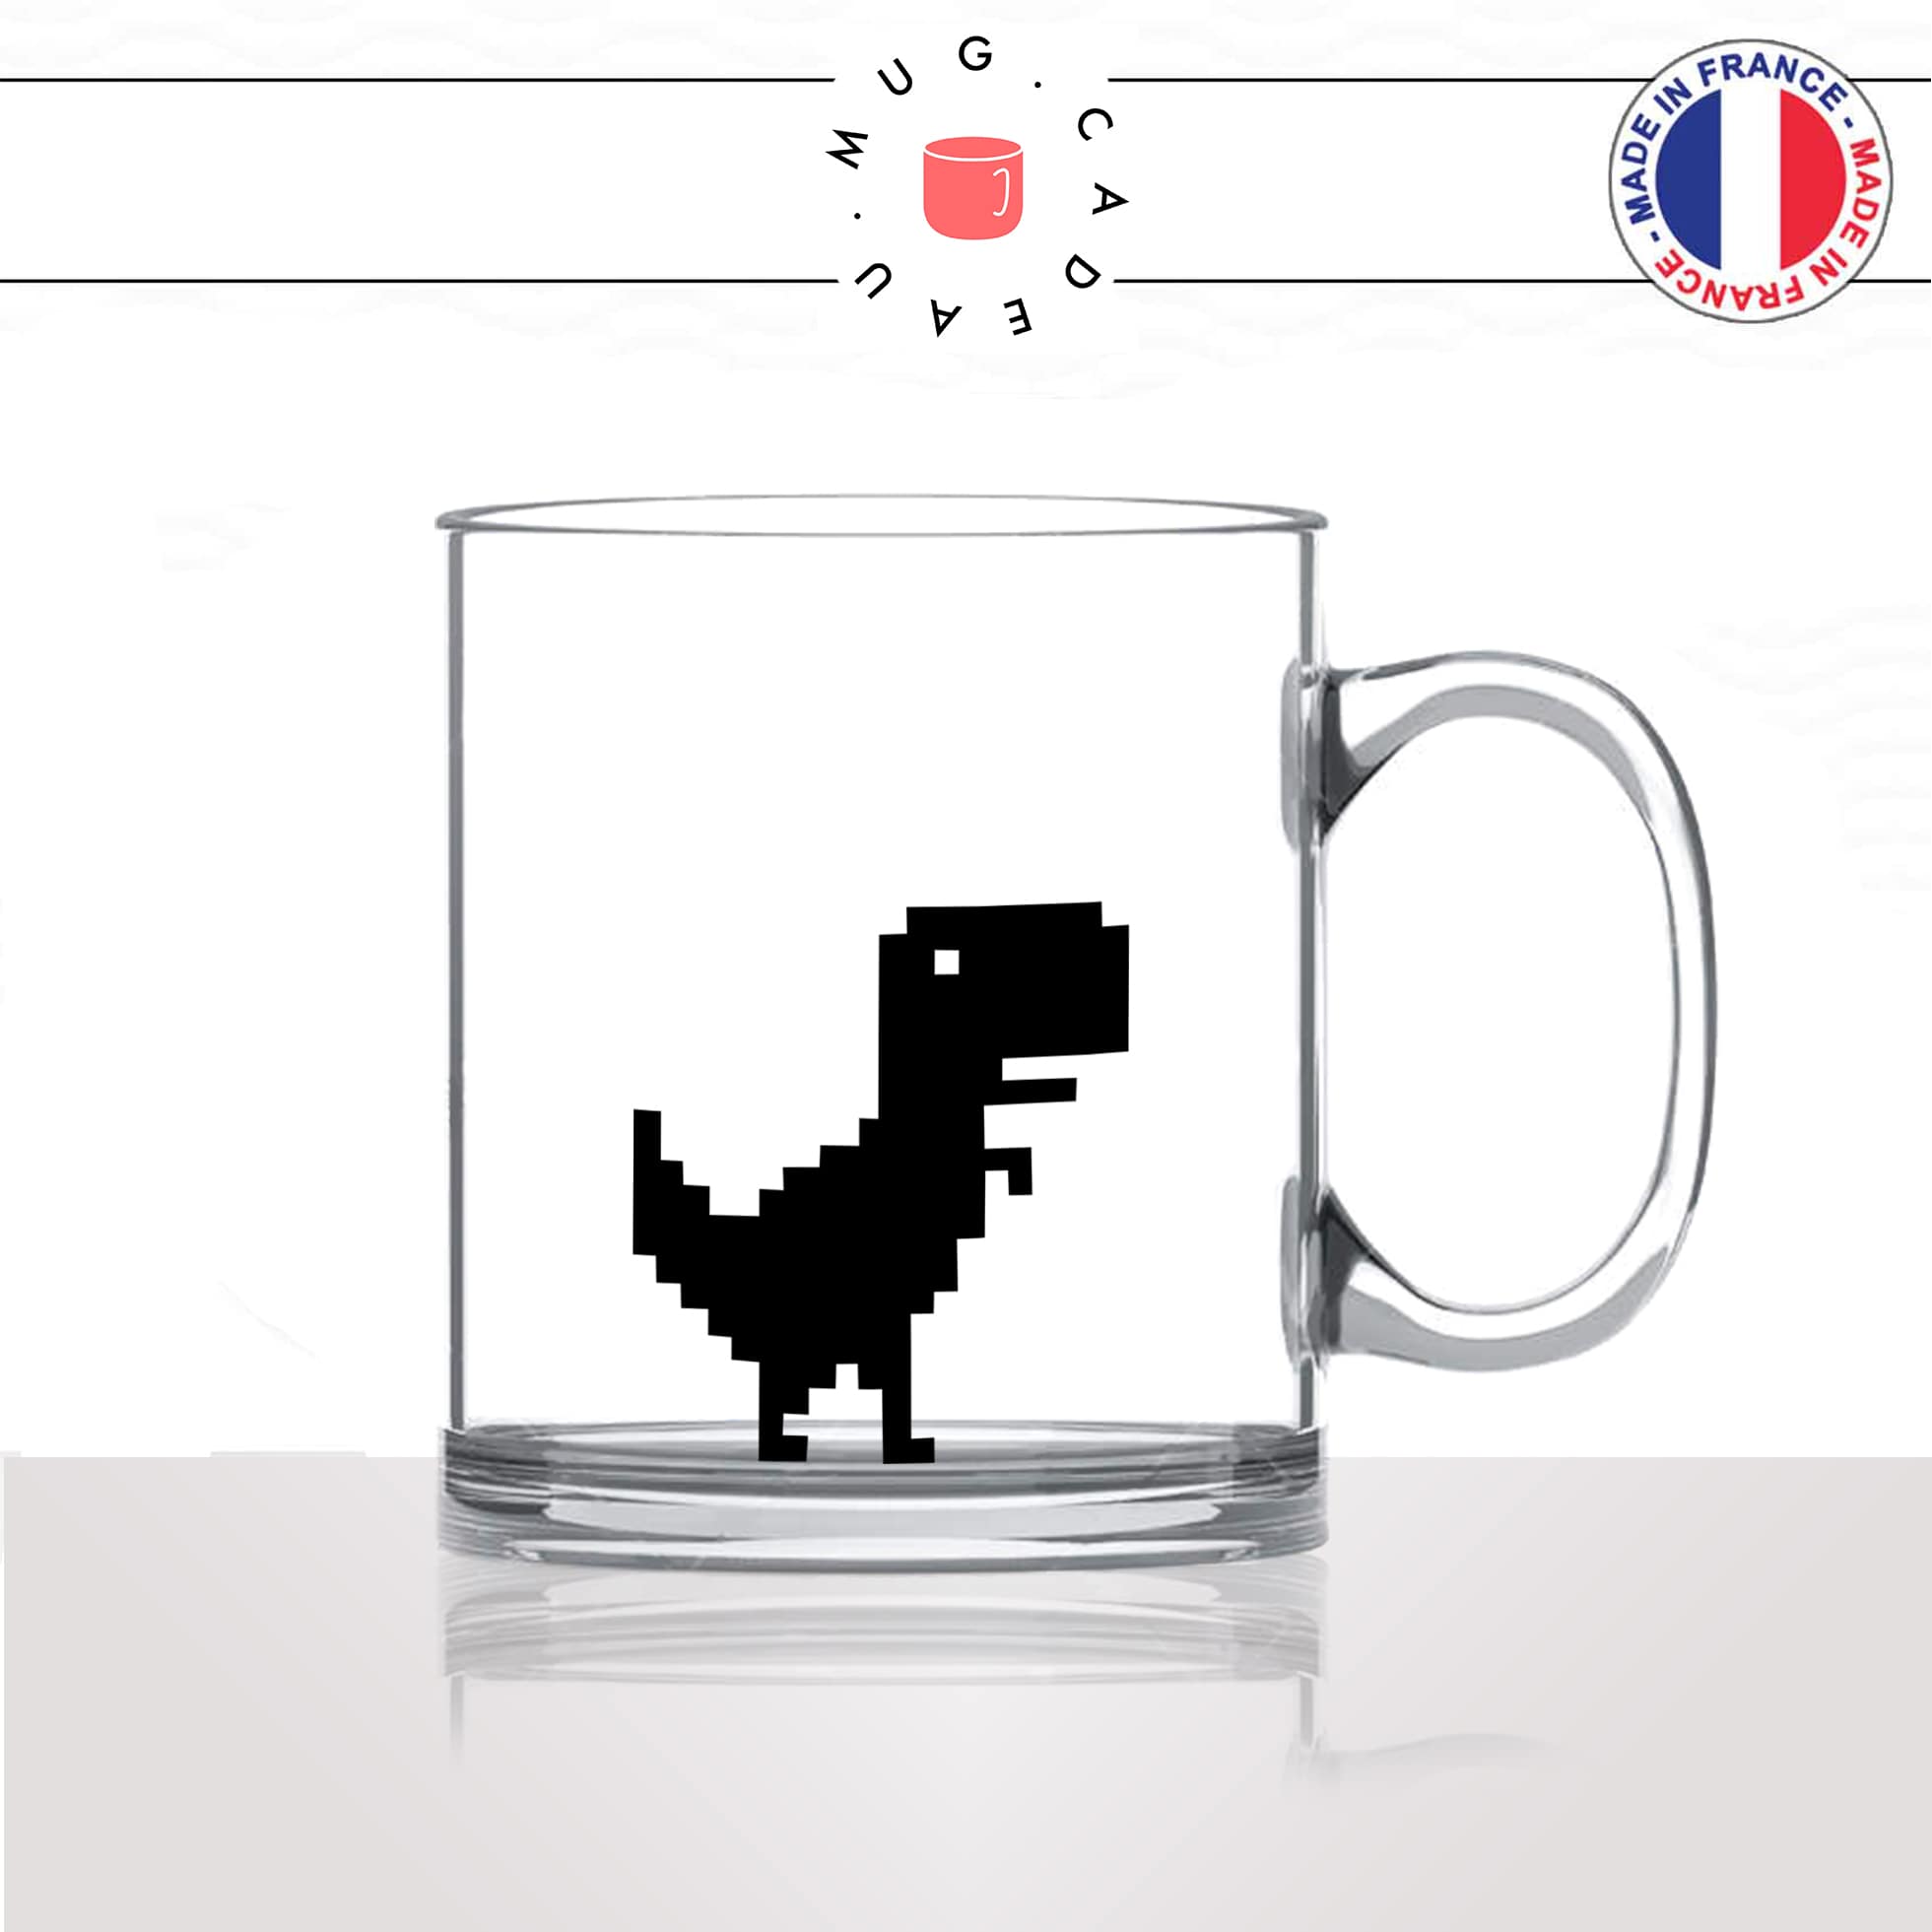 mug-tasse-en-verre-transparent-dinosaure-t-rex-geek-no-internet-error-drole-mignon-animal-noir-fun-café-thé-idée-cadeau-original-personnalisé2-min